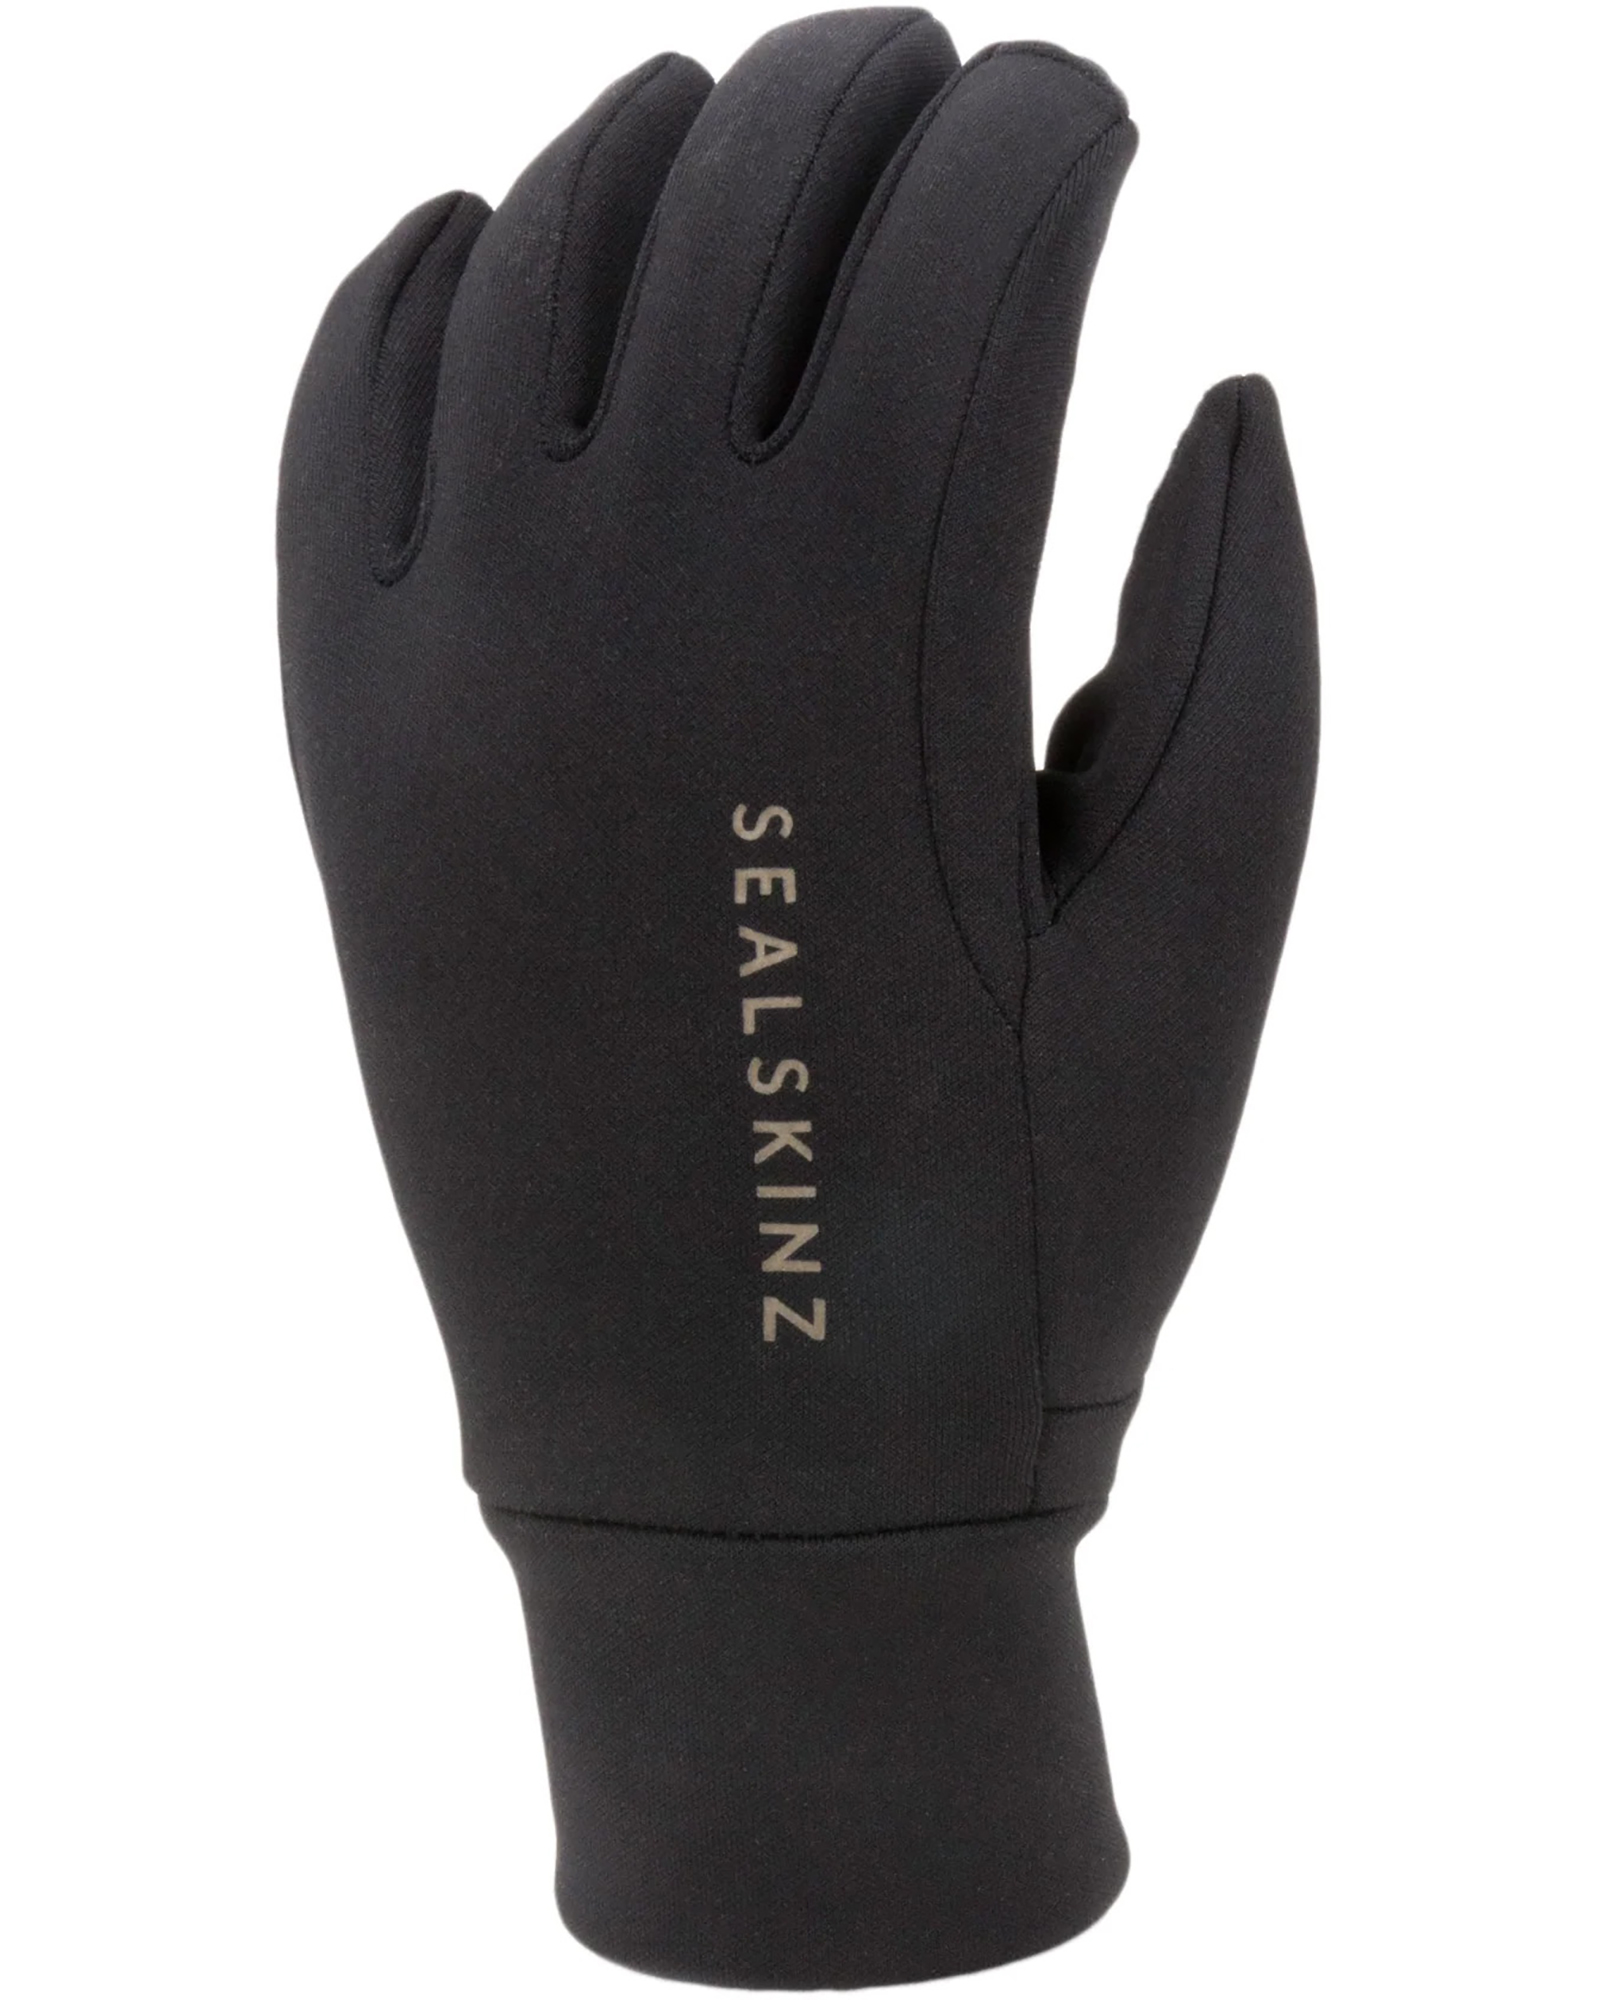 Sealskinz Tasburgh Gloves - black XL